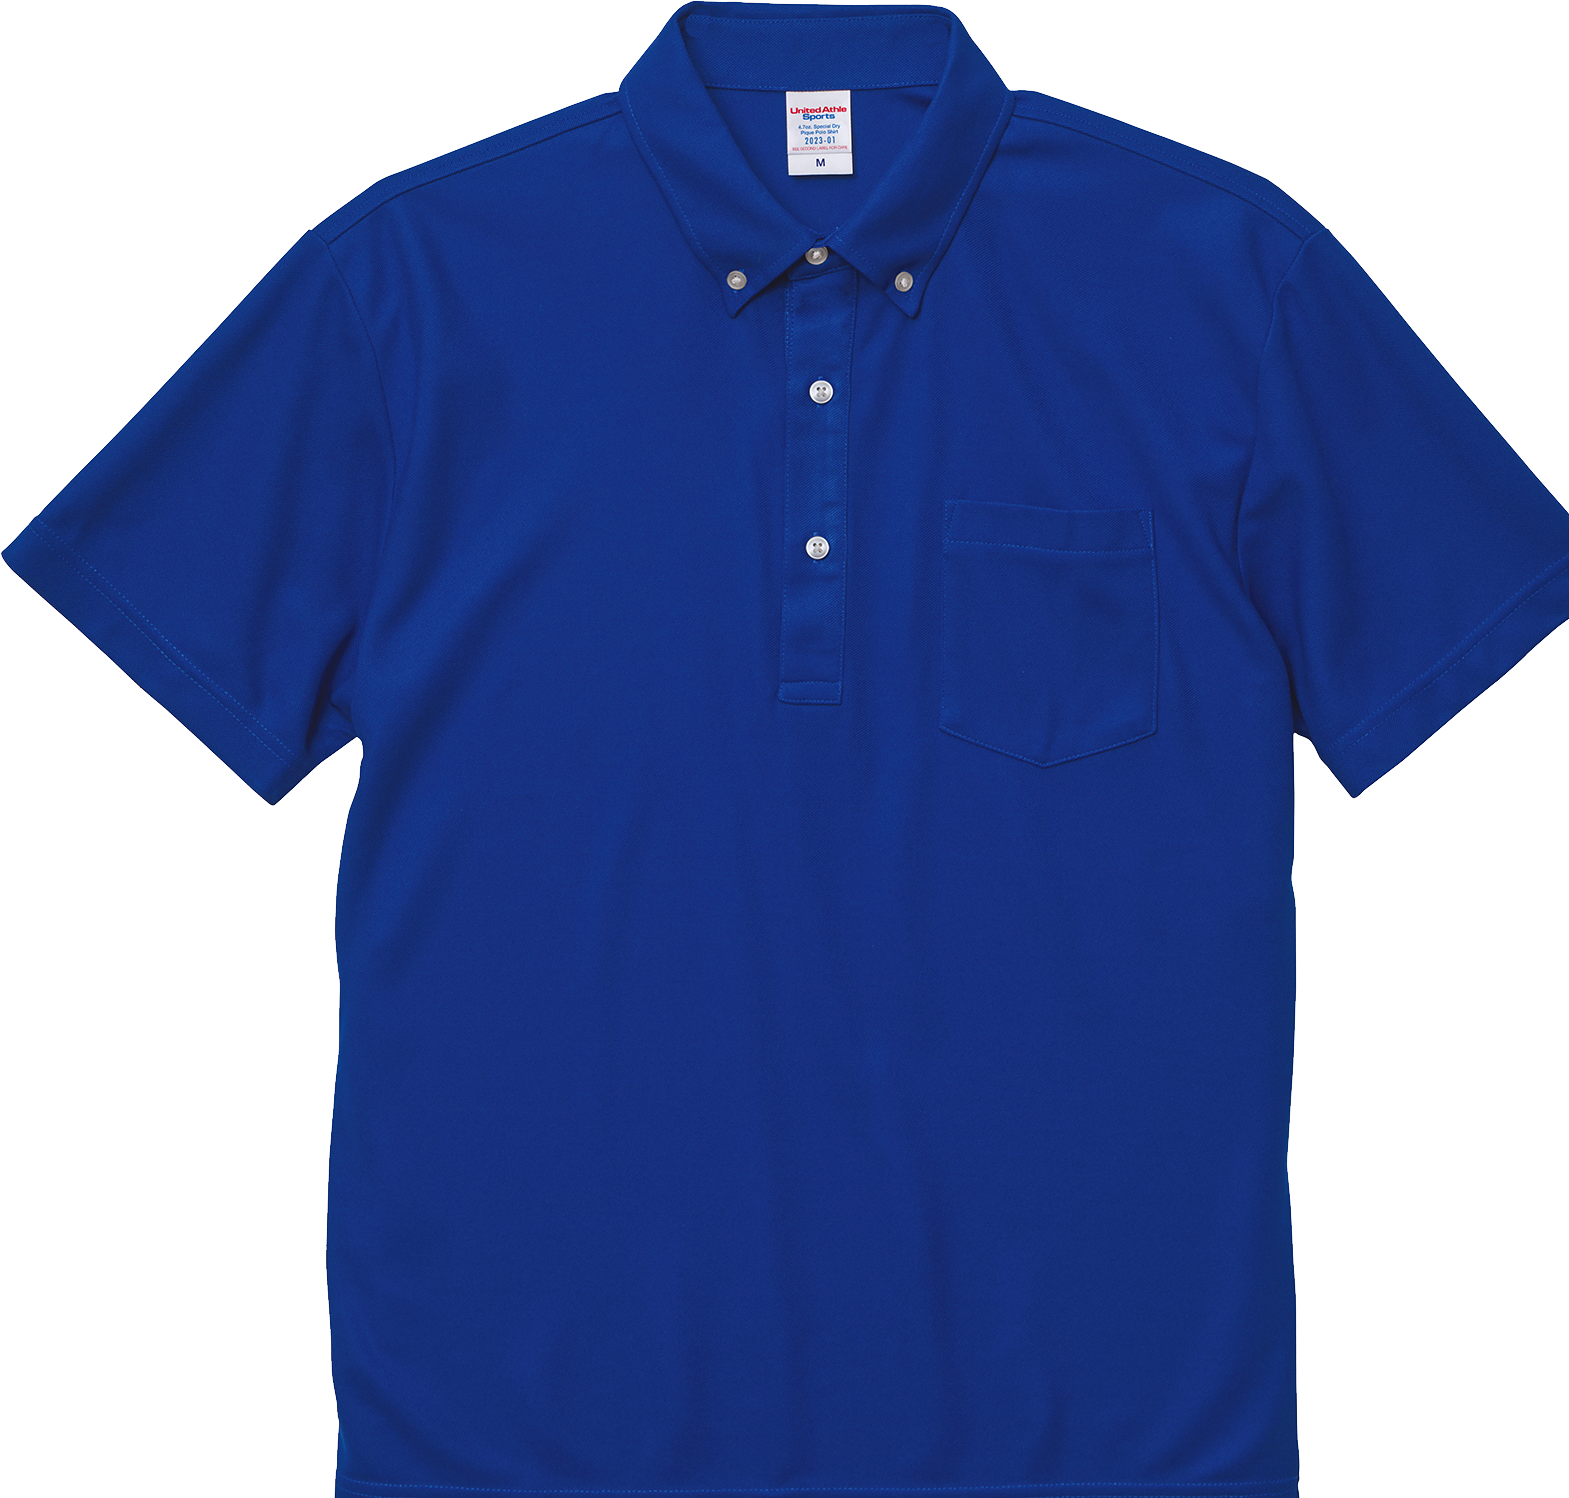 バランスと実用性を考慮したサイズ感の胸ポケットを配したボタンダウンポロシャツ、DRYの機能性とイージーケアの利便性を兼備